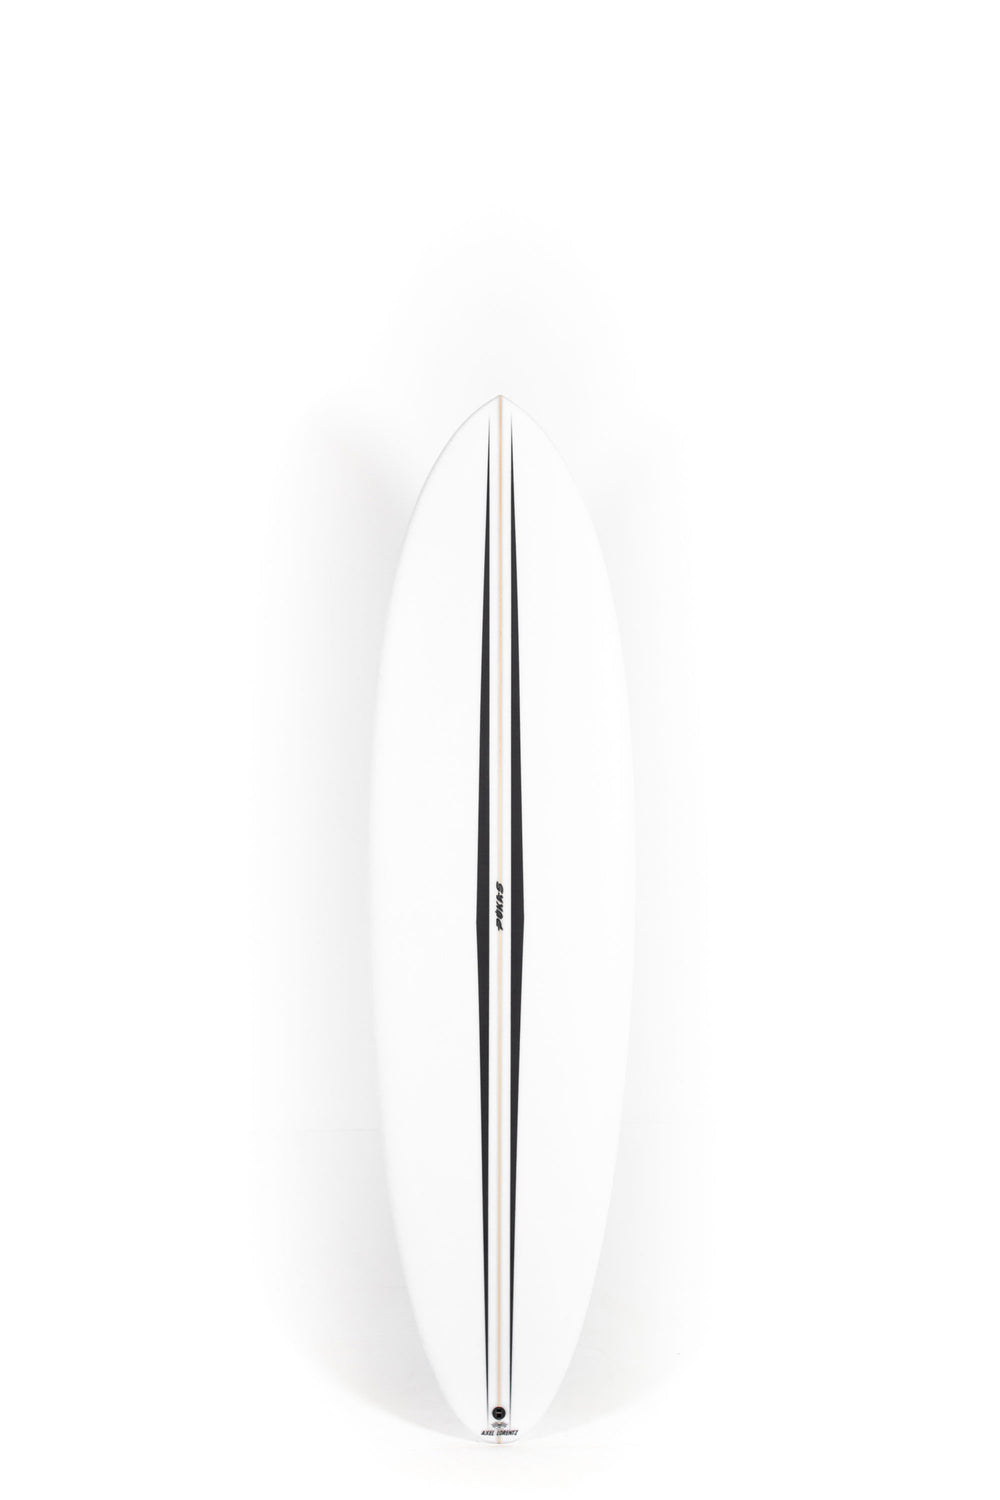 Pukas Surfboard - LA CÔTE by Axel Lorentz - 6'6